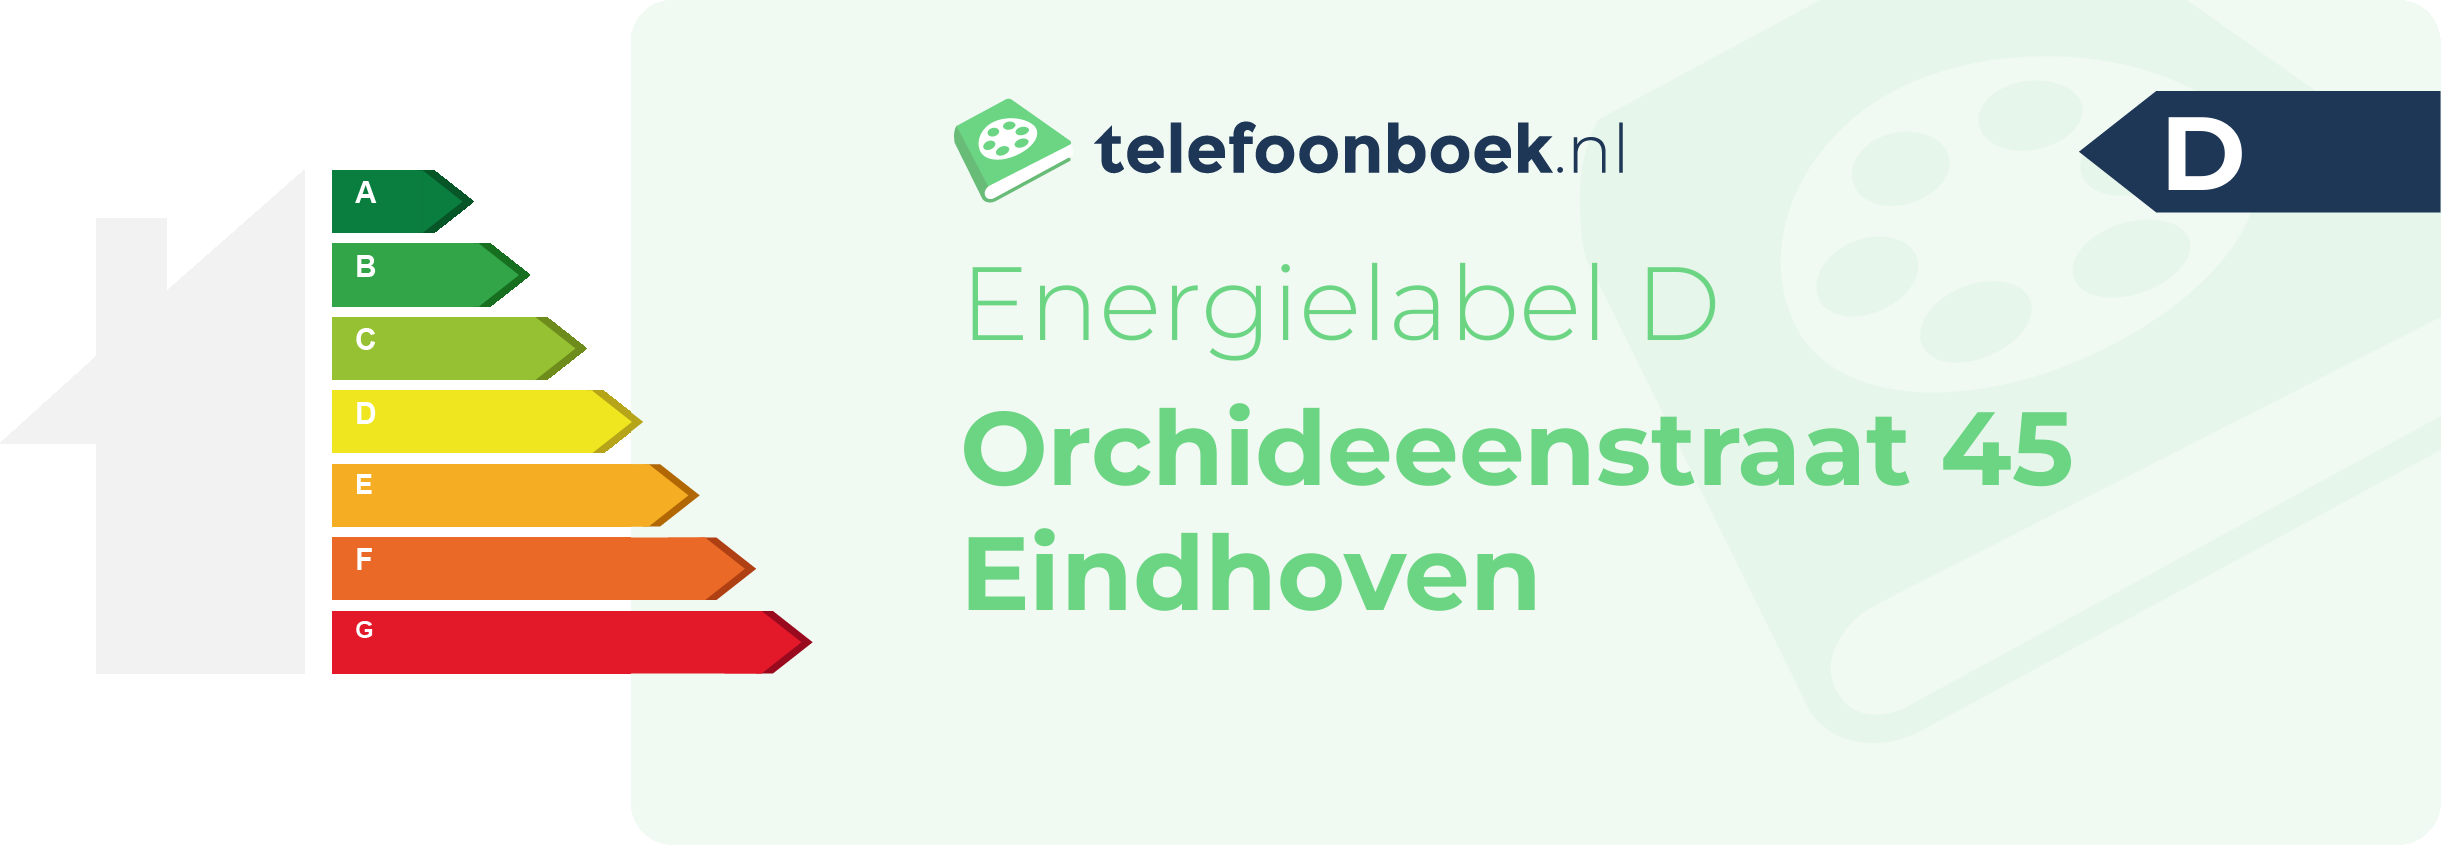 Energielabel Orchideeenstraat 45 Eindhoven